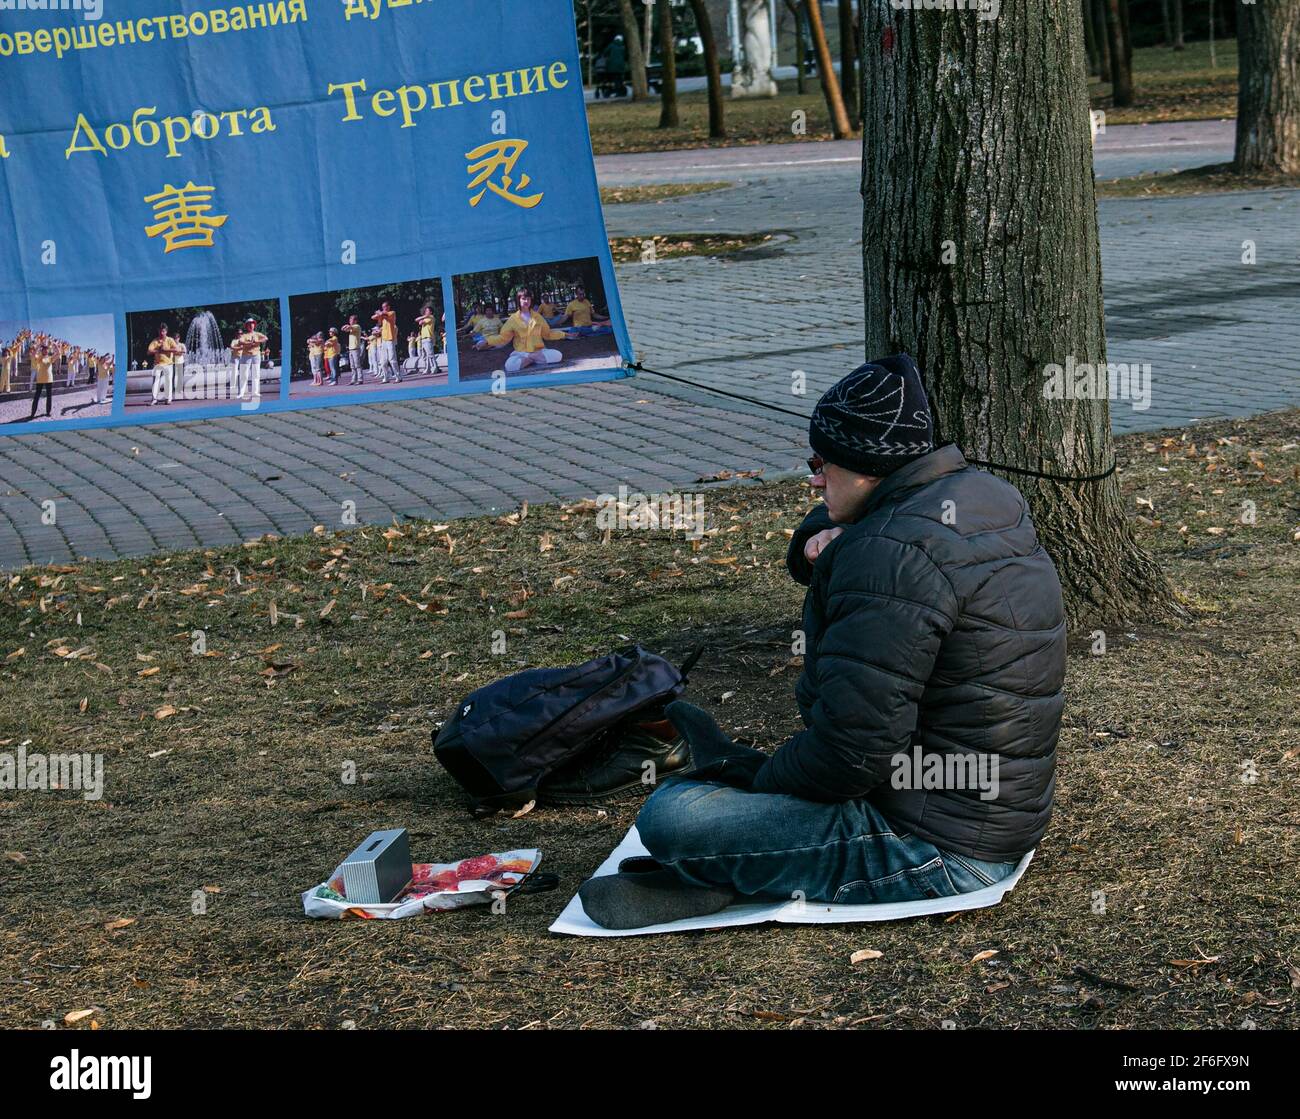 Dnepropetrovsk, Ucrania - 03.15.2021: Un hombre en el parque se dedica a la meditación. Foto de stock